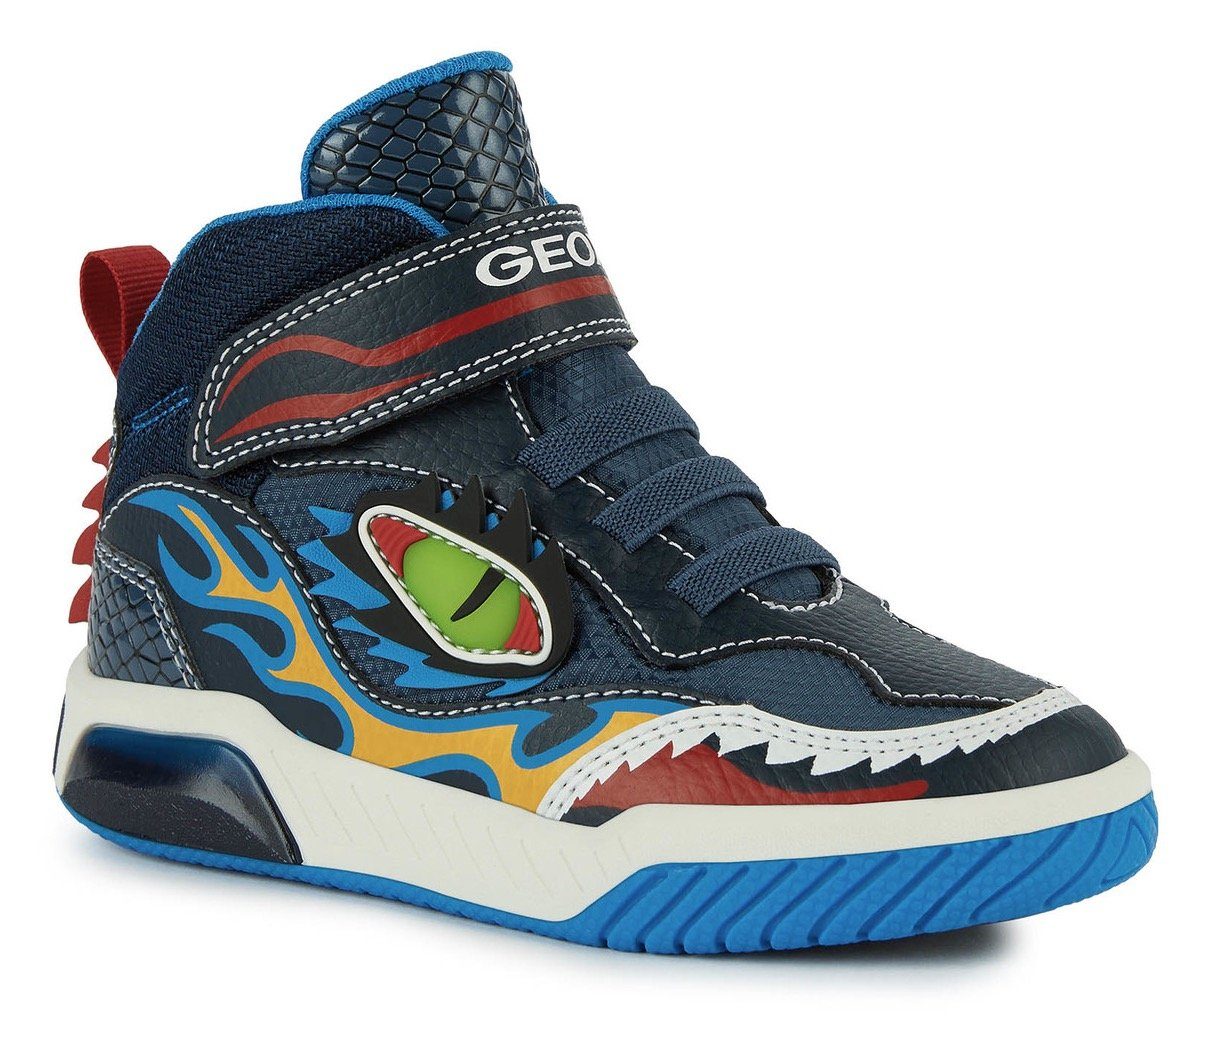 Geox Jungen LED-Schuhe online kaufen | OTTO